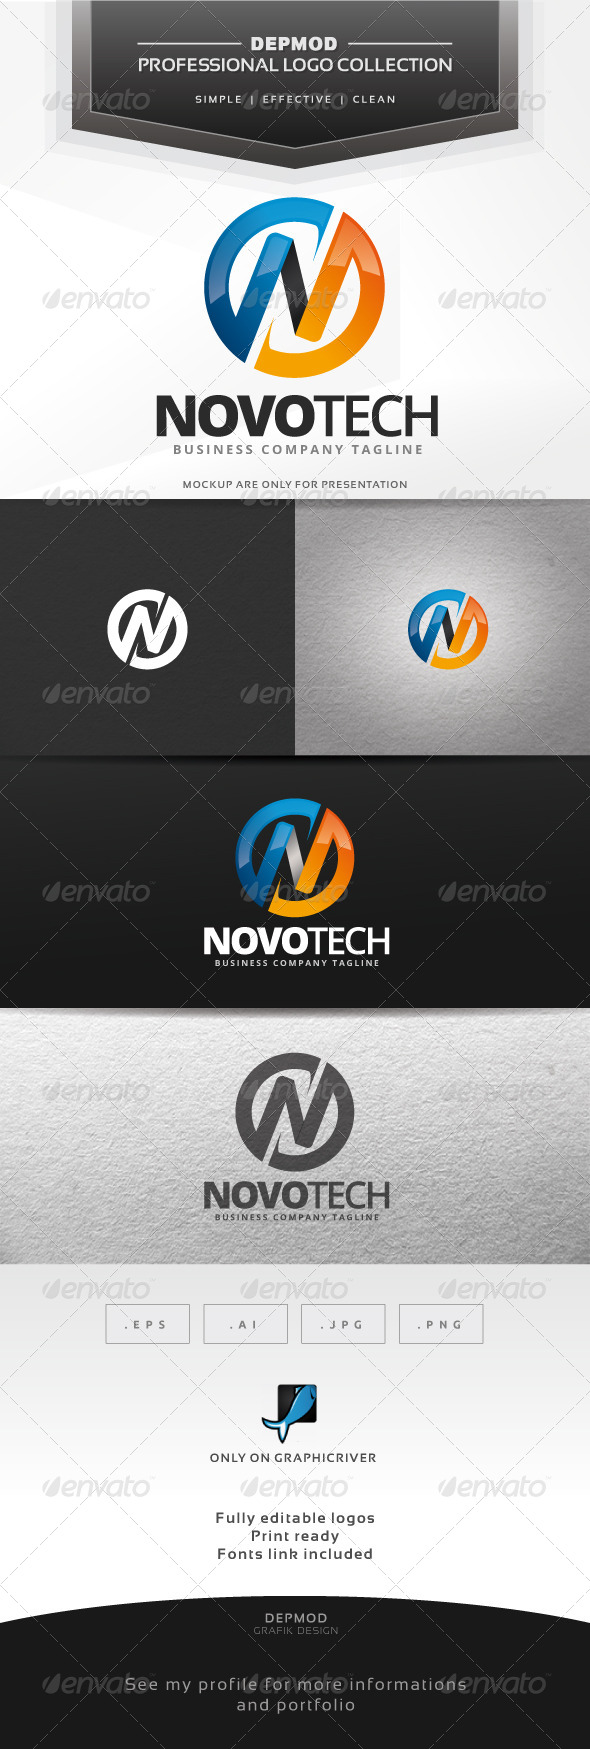 Novo Tech Logo